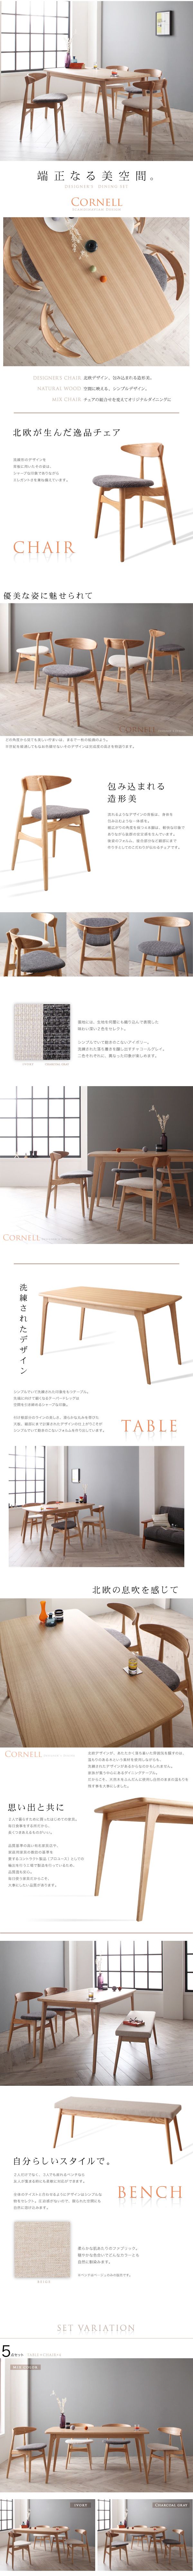 日本在庫ダイニング 5点セット(テーブル+チェア4脚) ミックス W150 北欧デザイナーズ ダイニングセット Cornell コーネル 4人用